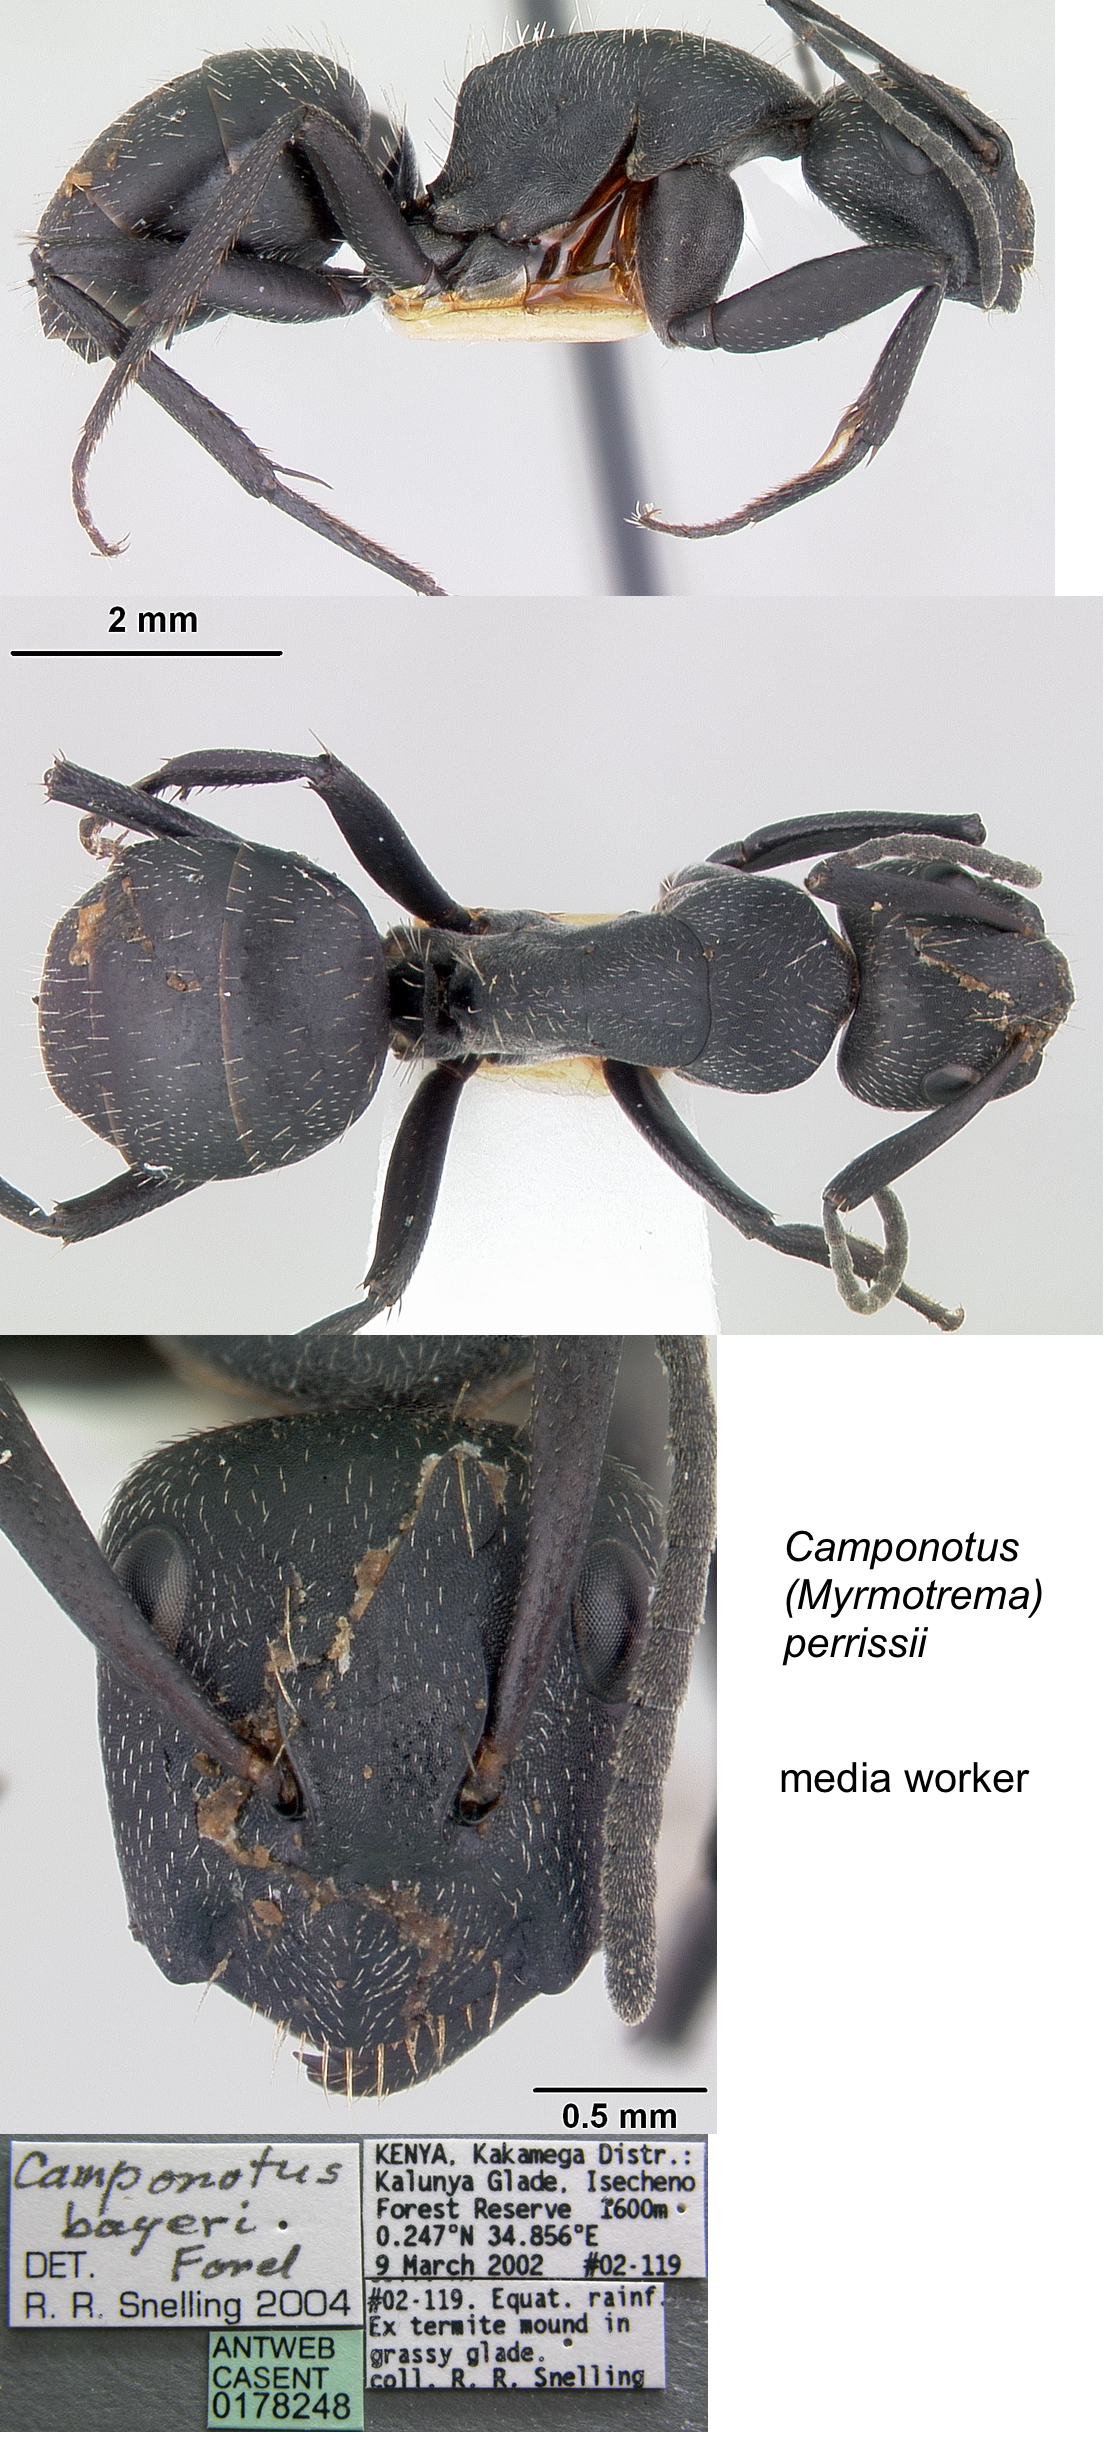 Camponotus perrisii minor